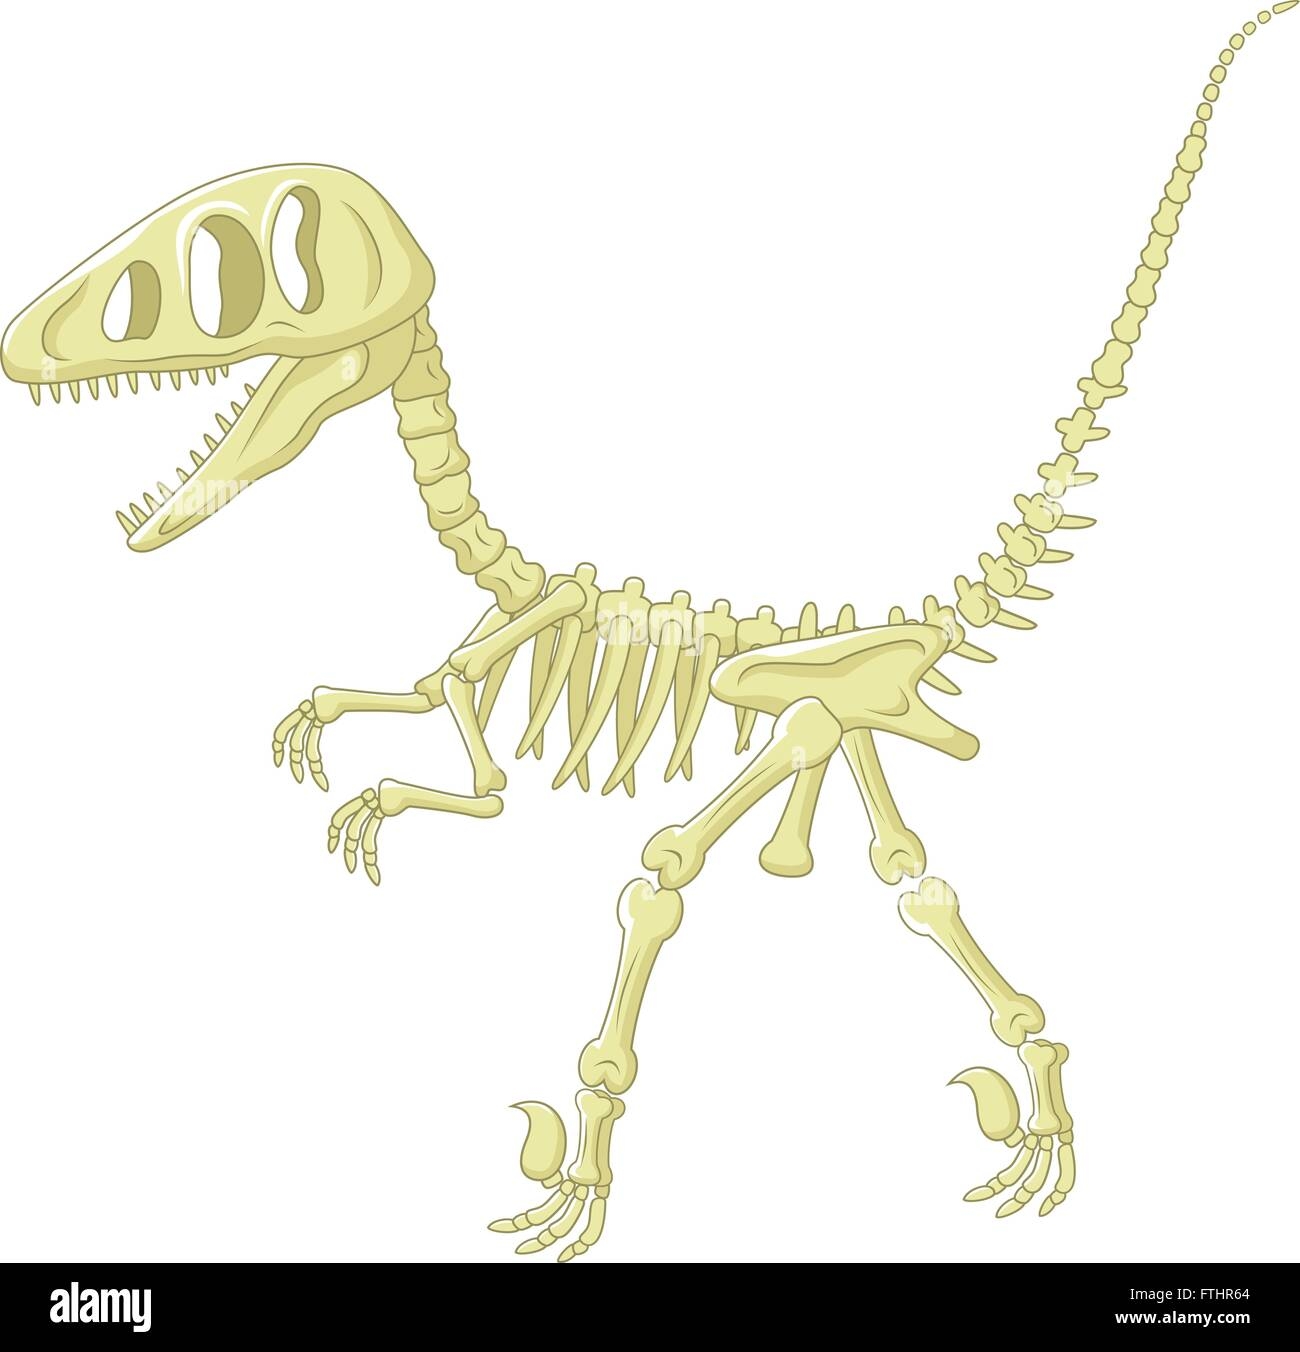 Мультяшные скелеты динозавров